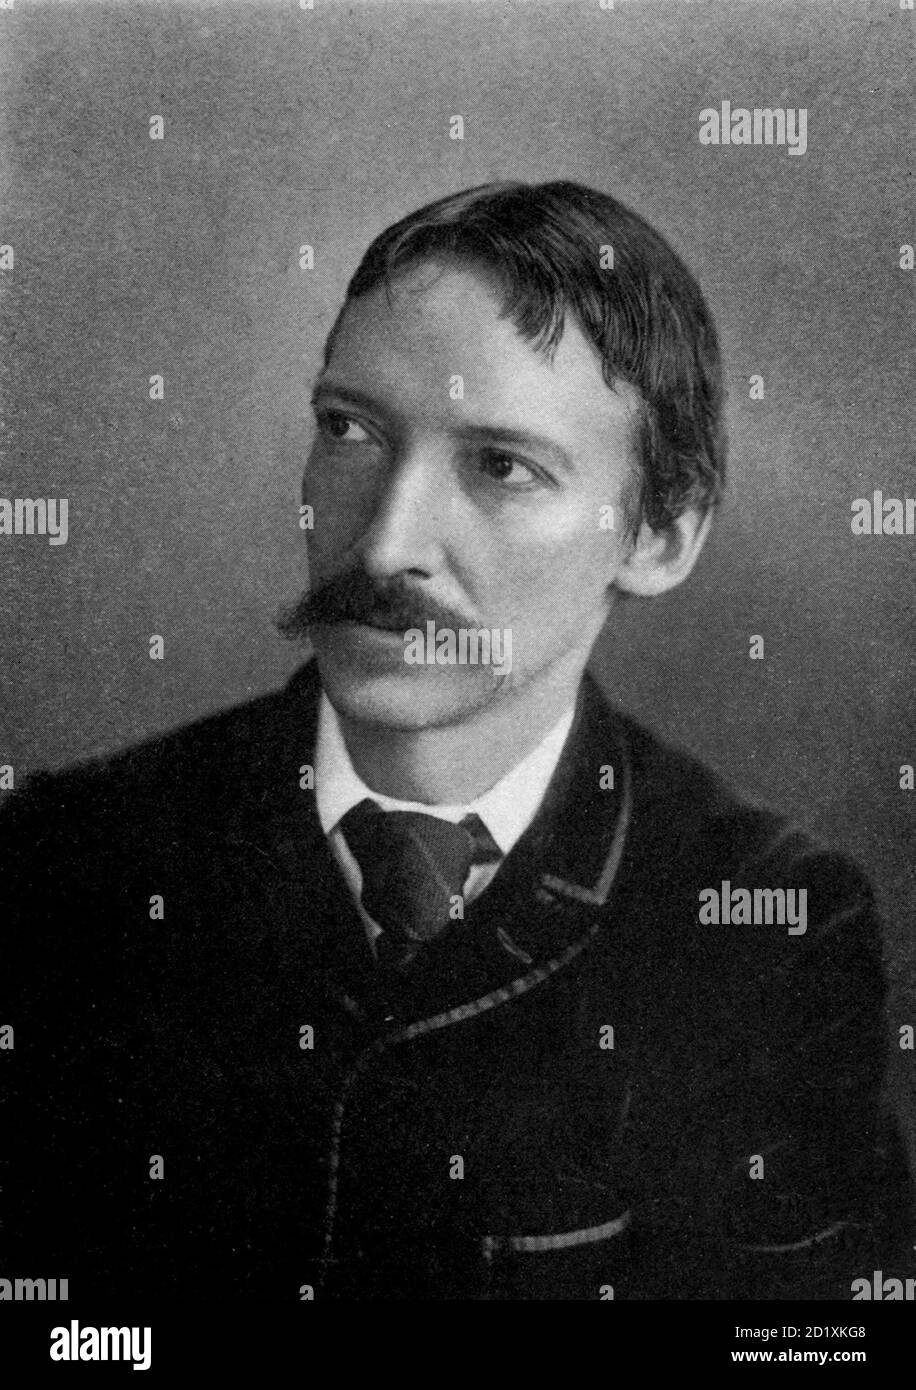 ROBERT LOUIS STEVENSON (1850-1894) romancier, poète et voyageur écossais Banque D'Images